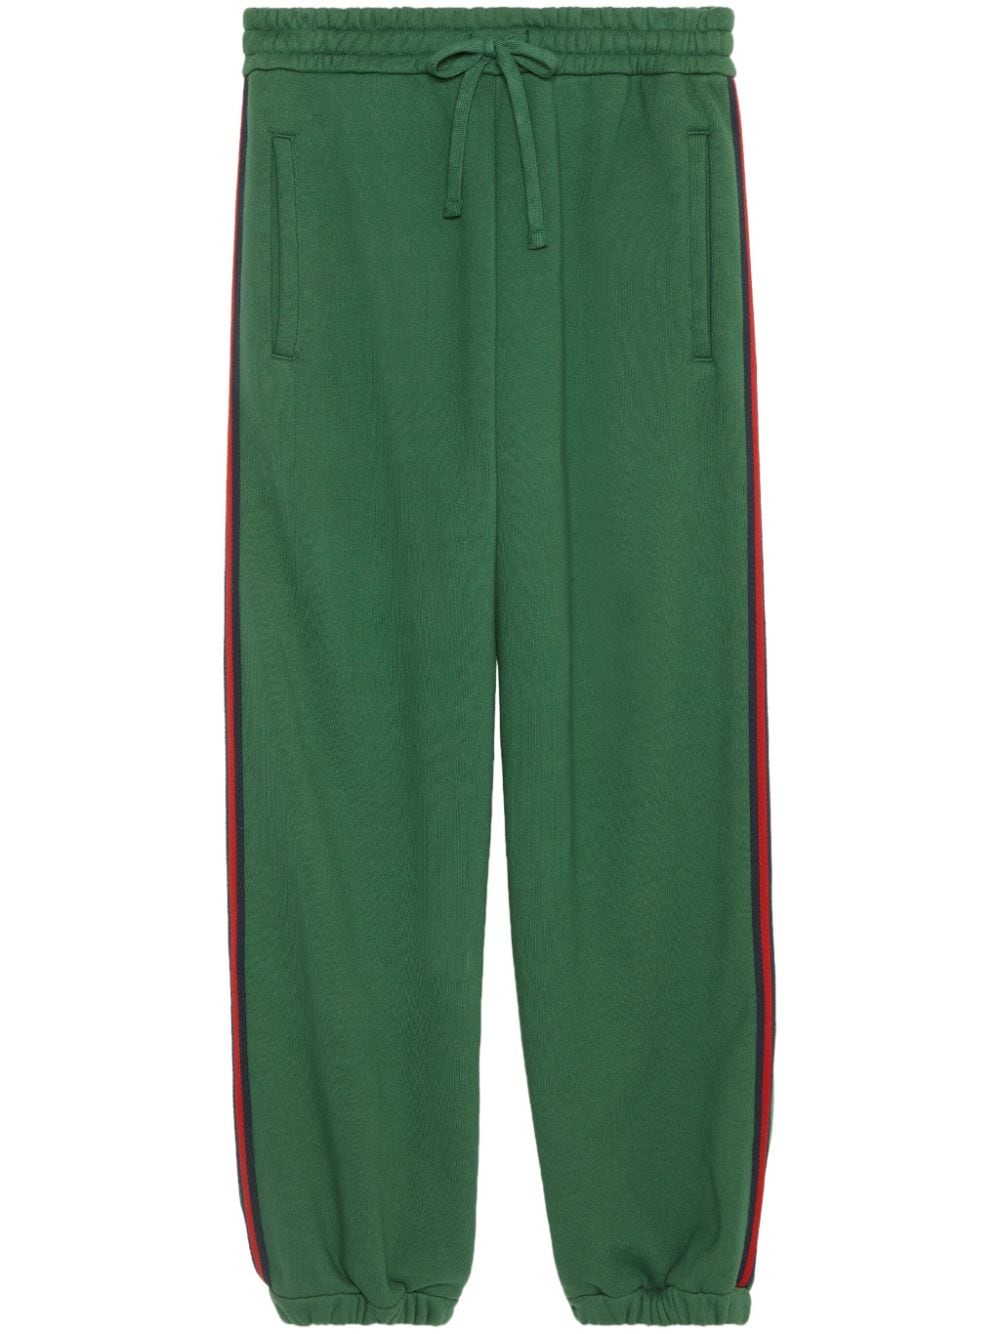 绿色高档棉质运动裤，经典标志绣花和网带装饰